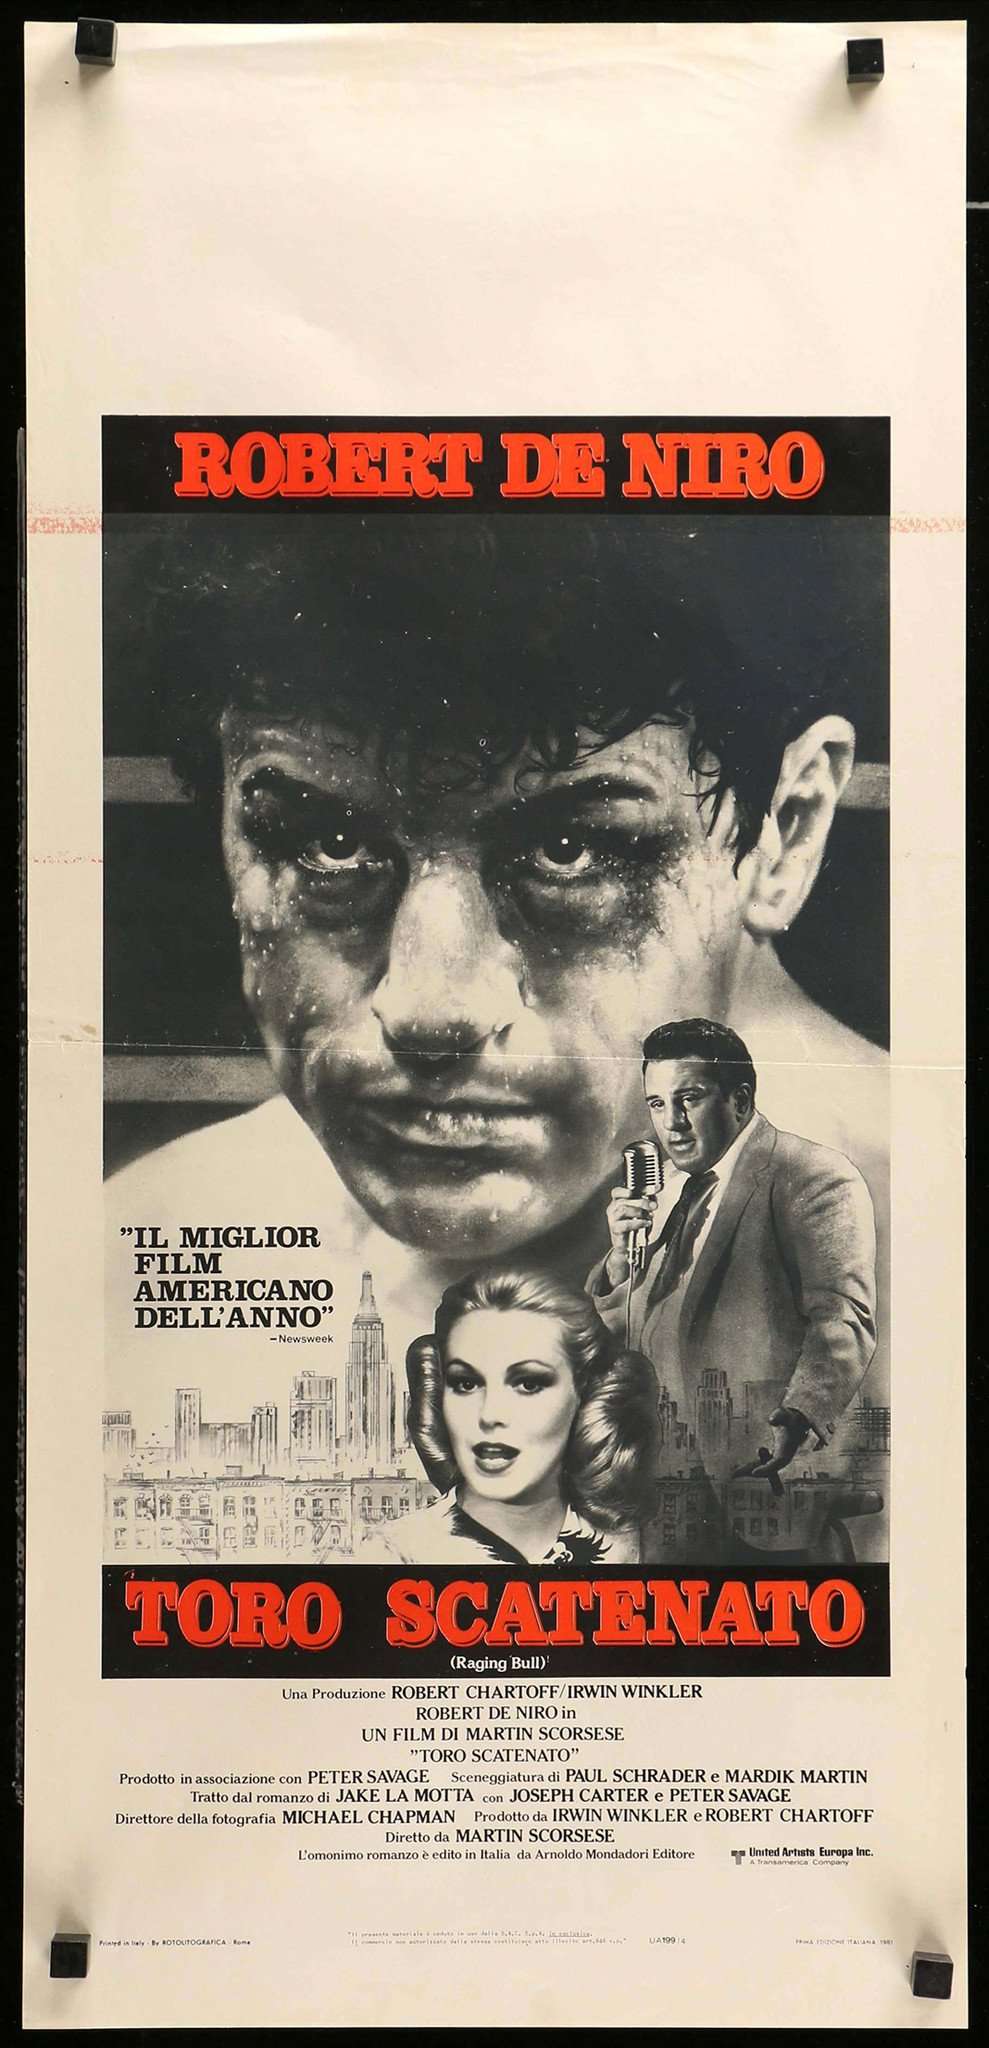 Raging Bull (1980) original movie poster for sale at Original Film Art